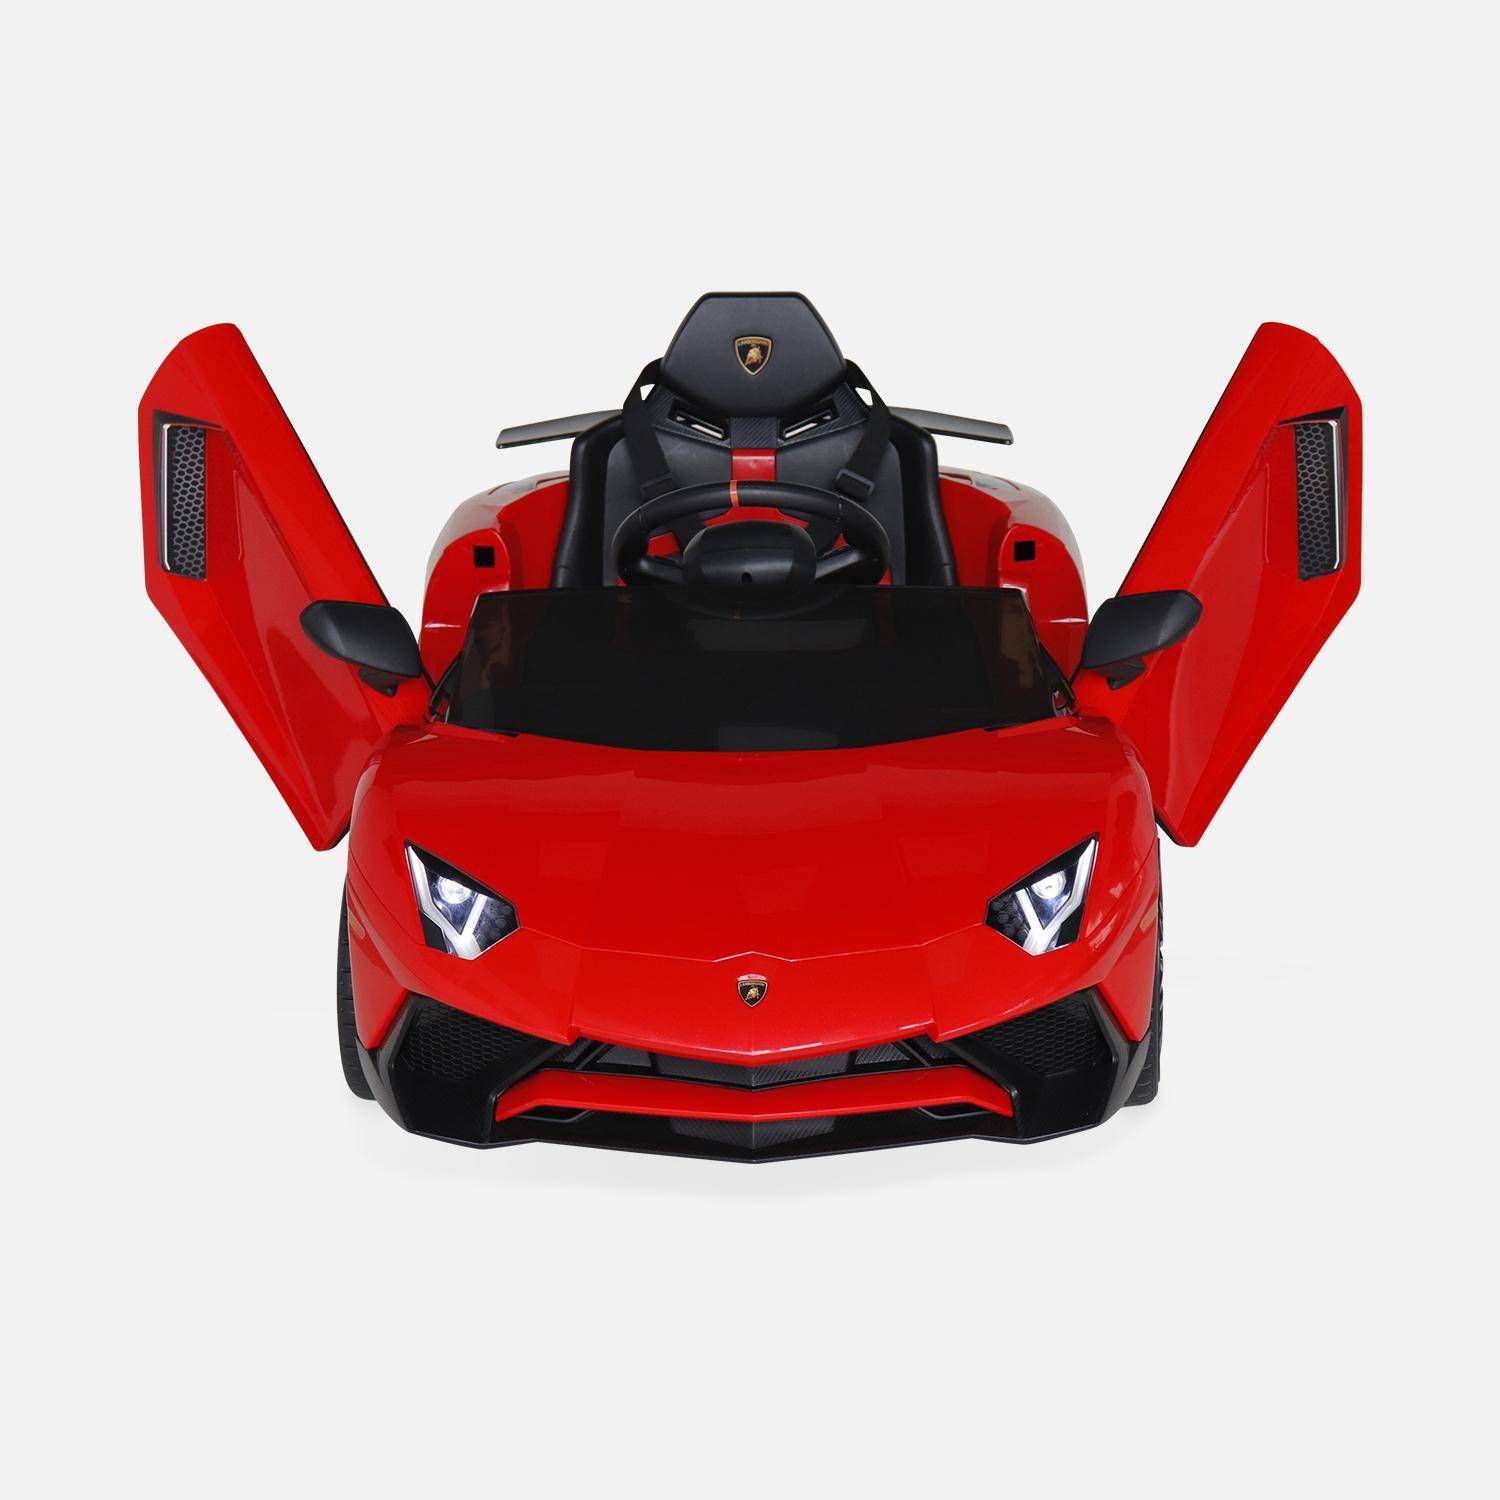 12V Lamborghini elektrische kinderauto, rood, 1 zitplaats, met autoradio, afstandsbediening, MP3, USB-poort en functionele koplampen,sweeek,Photo5